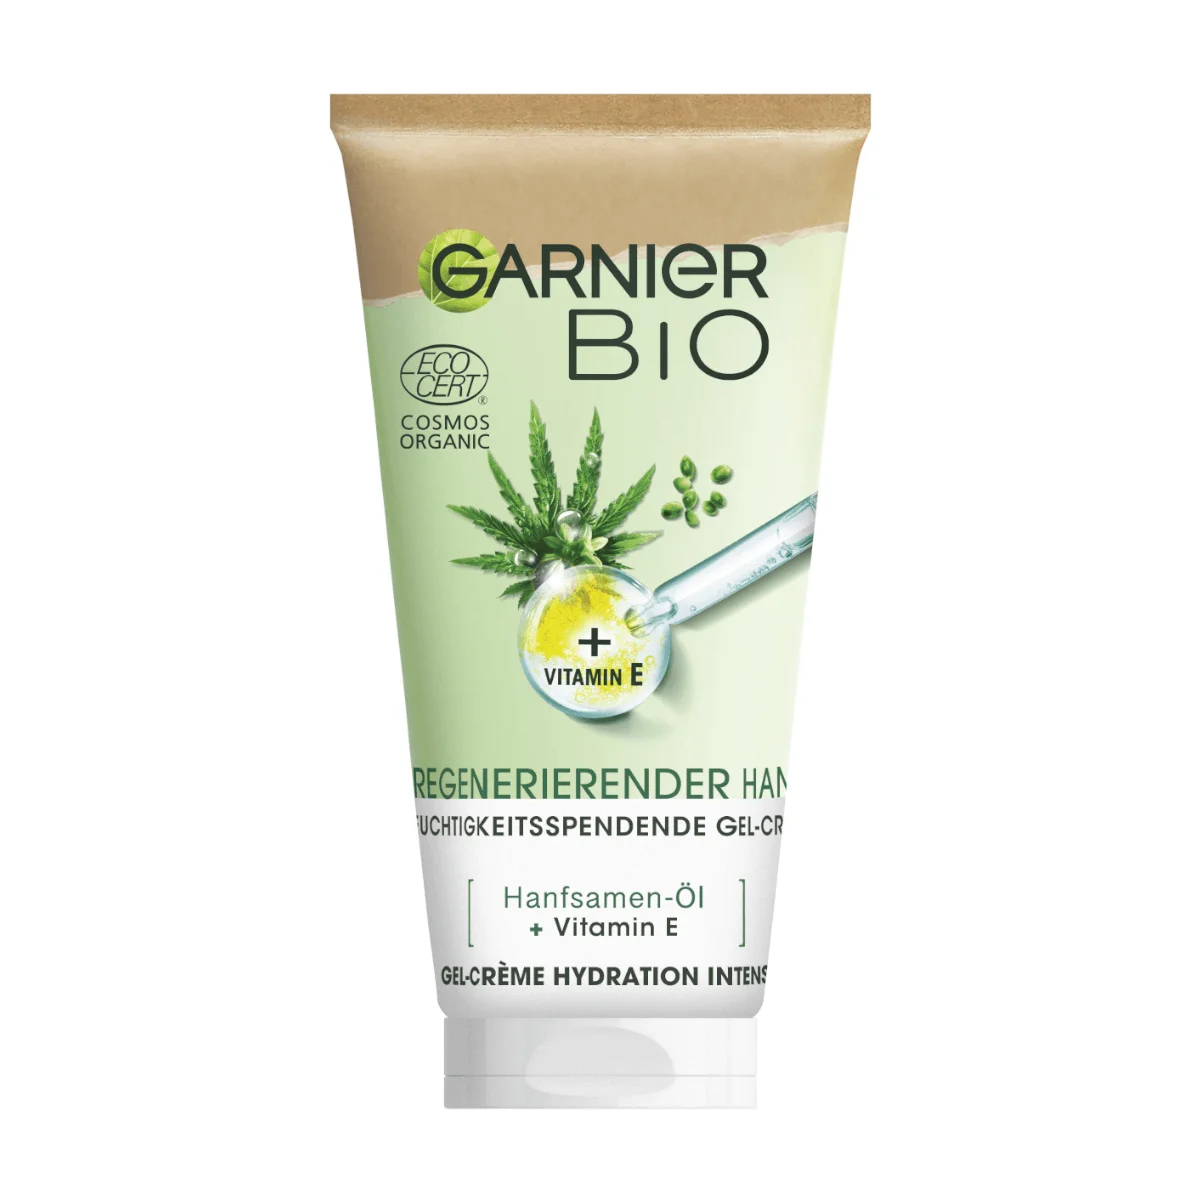 Garnier BIO Tagespflege mit Hanf-Öl, 50 ml